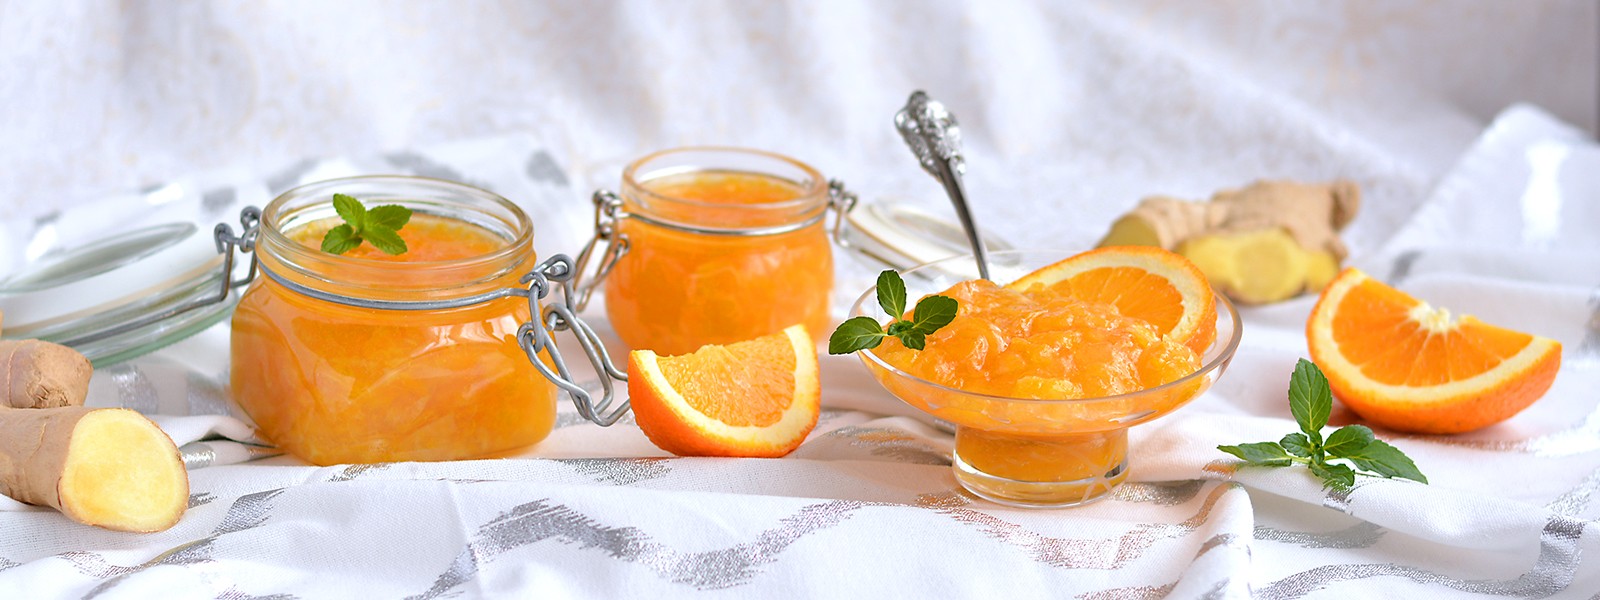 Pomerančová marmeláda se zázvorem